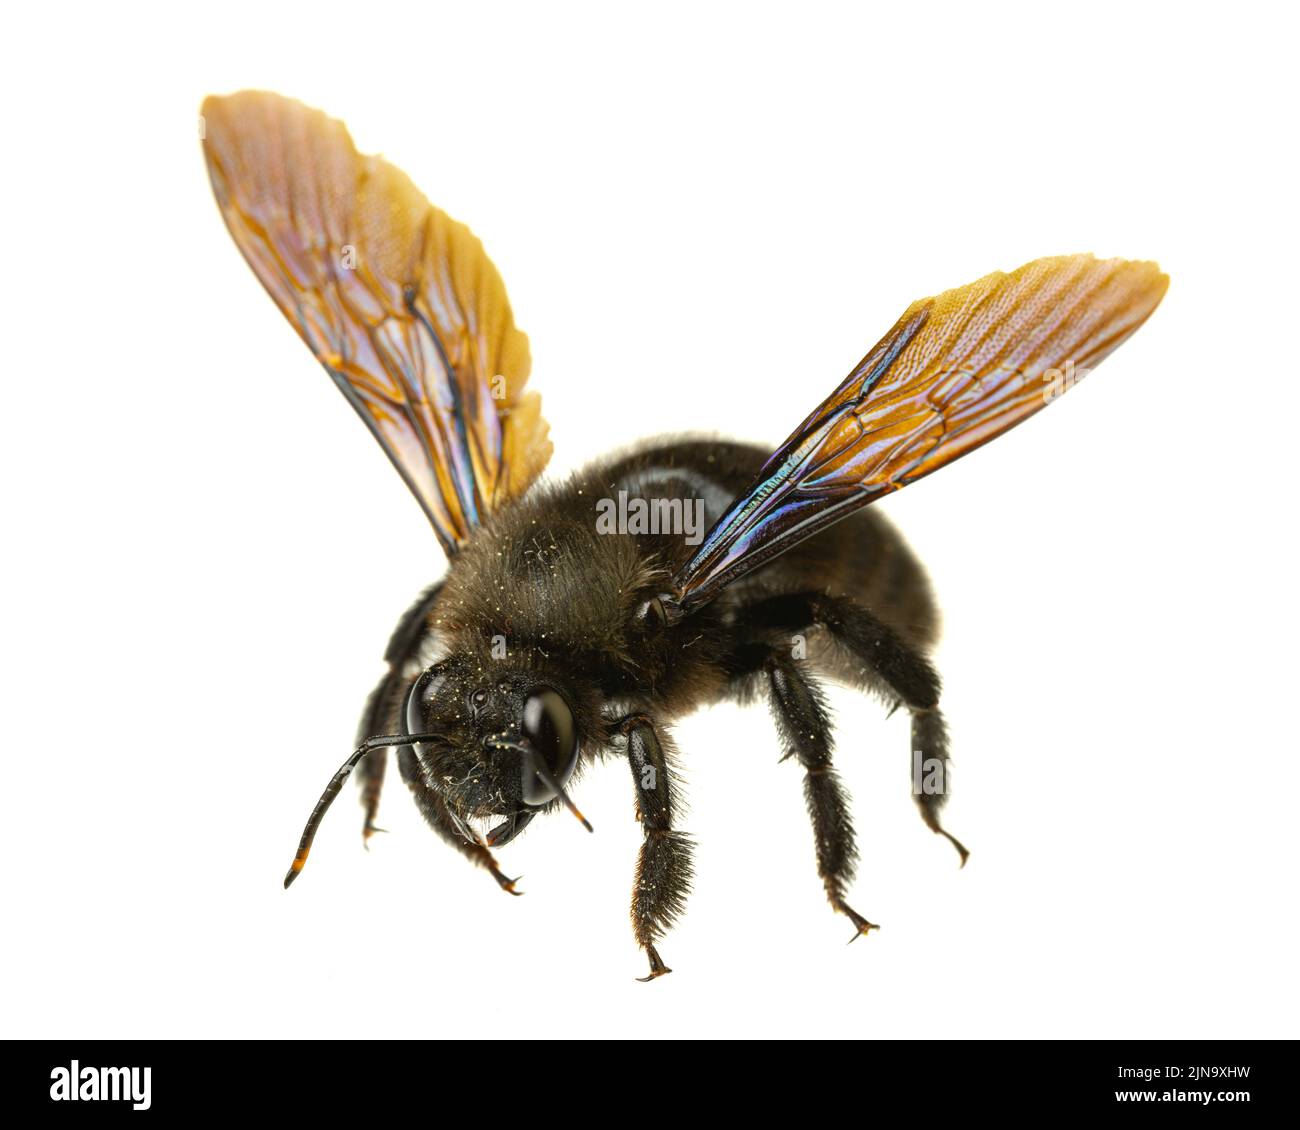 Insectes d'europe - abeilles: Macro de l'abeille violette mâle (Xylocopa violacea german Blauschwarze Holzbiene) isolée sur fond blanc avec la flèche Banque D'Images